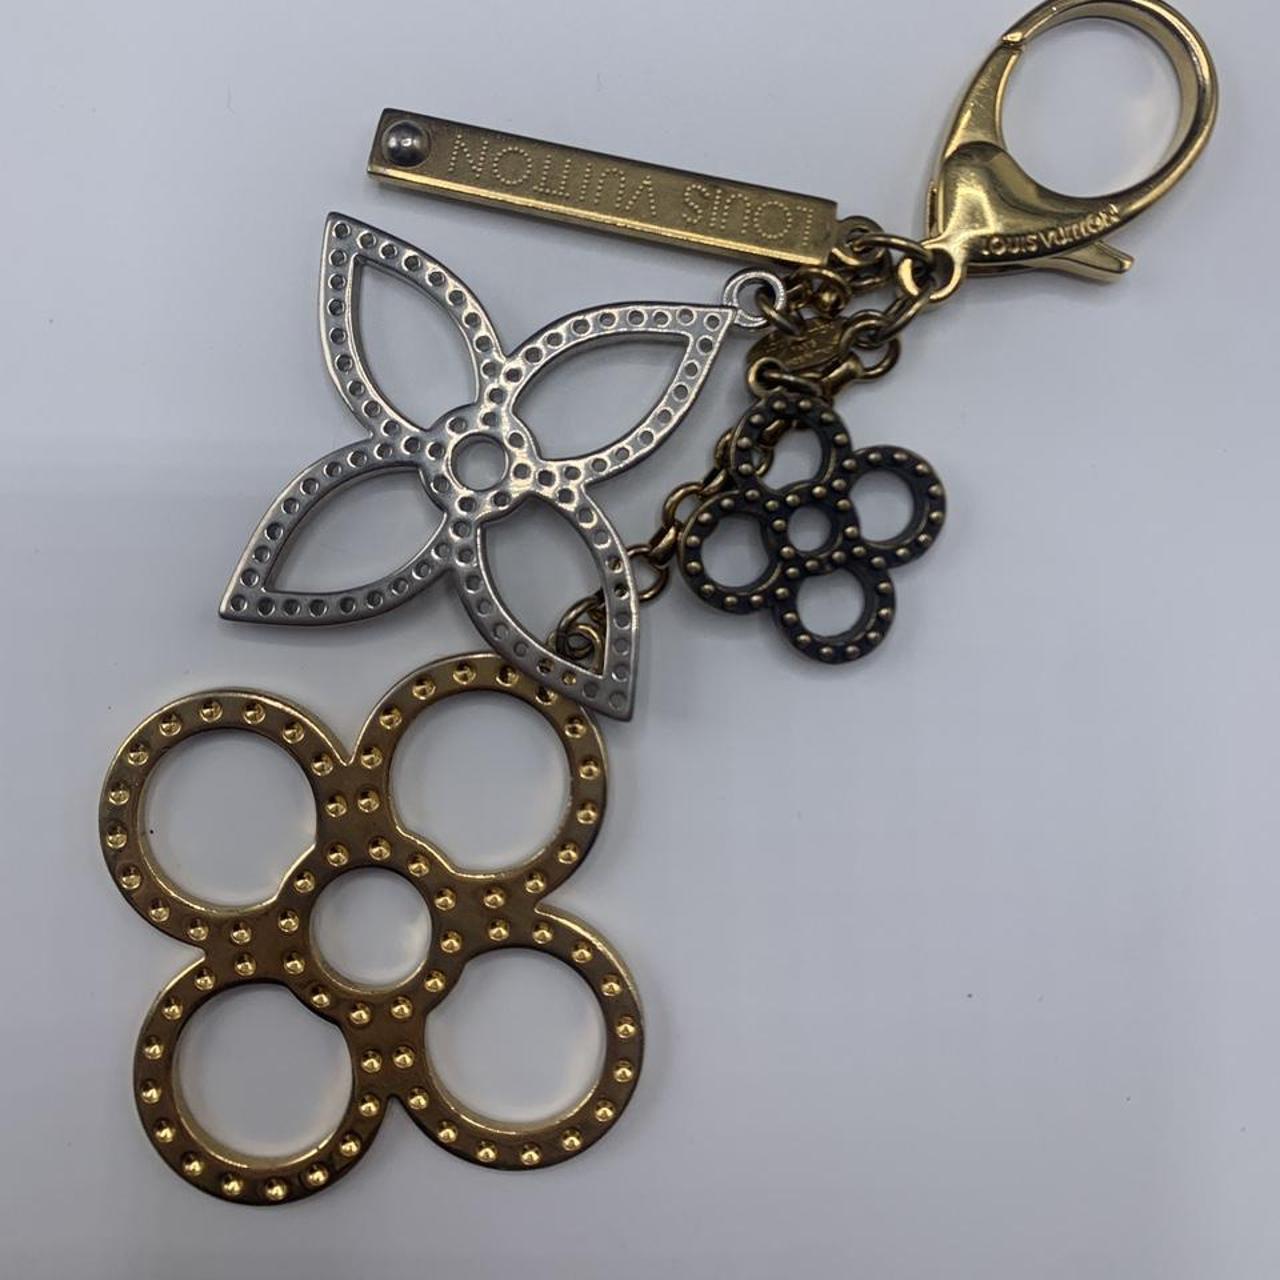 Louis Vuitton Sac Tapage Key Ring